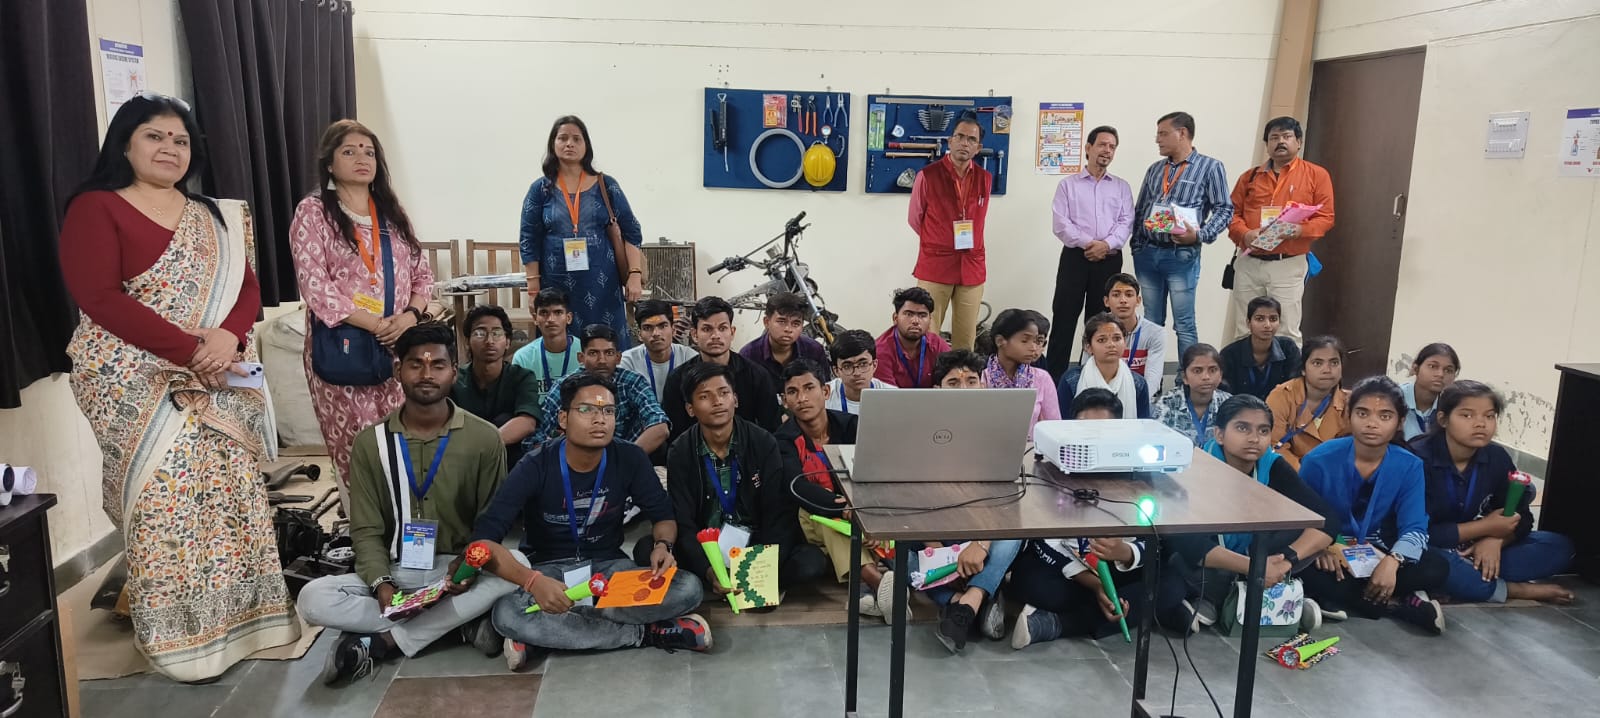 उत्तर प्रदेश के प्रतिभावान छात्रों ने किया जीजीआईसी ज्वालापुर का भ्रमण